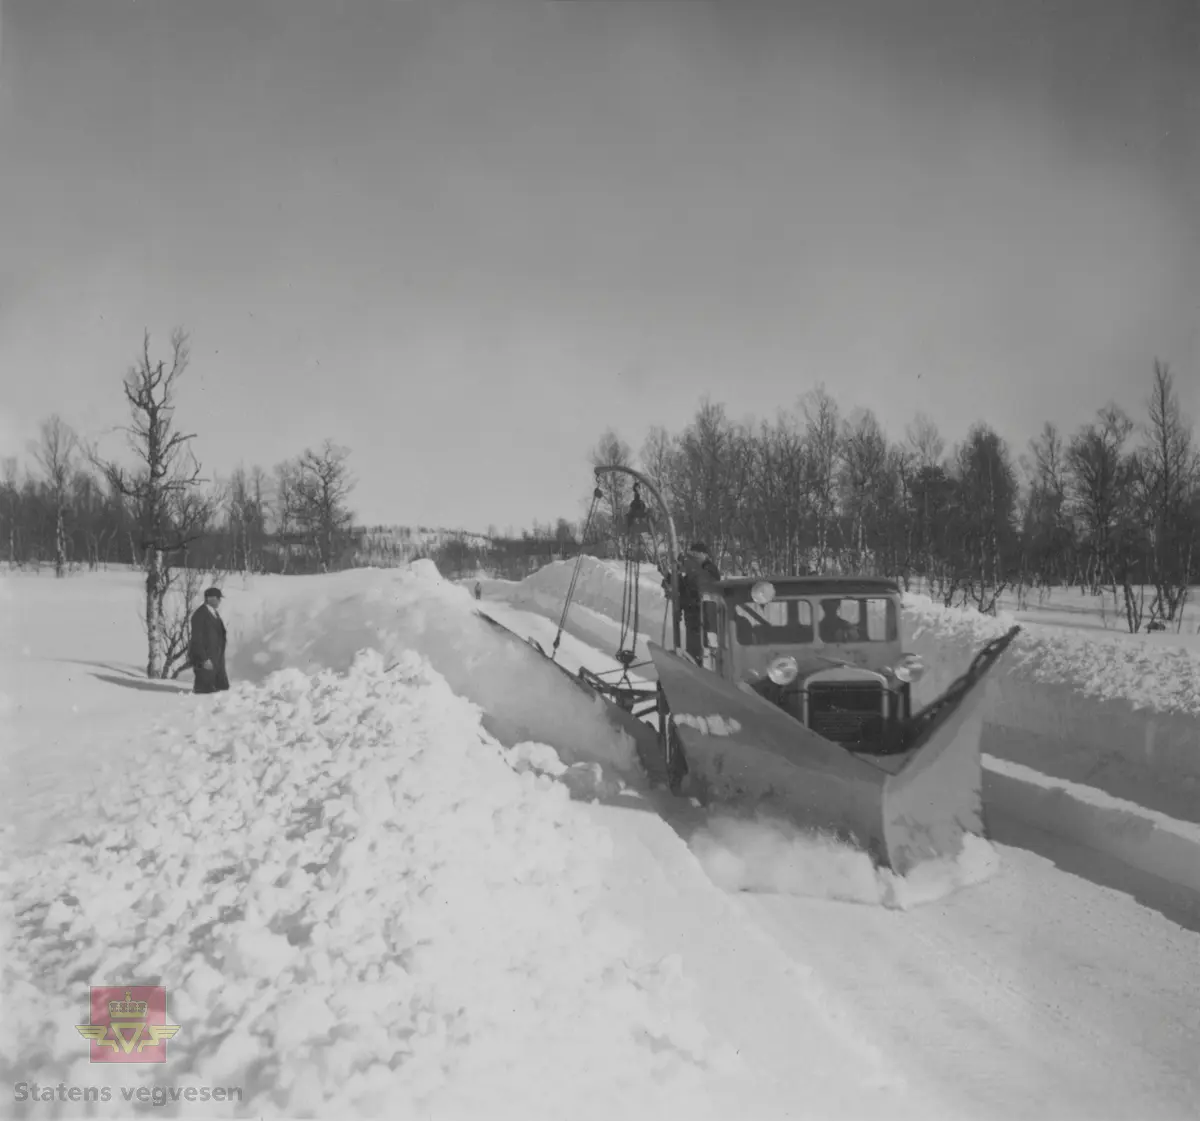 Snøbrøyting med FWD lastebil modell SSU, med spissplog og sideplog vinteren 1937. Mannen på planet betjener plogen ut og inn, og i høyden. Klikk på pilen til høyre for å se flere bilder. Bilde nr. 2 viser FWD brøytebil i arbeid med sideplog. Bilde nr. 3 viser FWD brøytebil. Bilde nr. 4 har påskrevet tekst på bildet :" I Troms Fylkes Veivesen".  Disse 4 bildene er fra Colbjørnsen & Co A/S sitt album. Men det kan tenkes at brøytebildene som vises her er fra Narvik, da strekningen Narvik - Tromsø ved Takvand er merket i albumet til tidligere vegdirektør Andreas Baalsrud "Mindealbum fra Troms". Et album han fikk fra deltagerne i Vei og Jernbanekommiteens reise i 1937, og som blant annet viser samme brøytebilder. Bilde nr. 5 og nr. 6 er fra vegdirektør Baalsruds Minnealbum fra Troms 1937. 

Ref. til artikkel i "Vegvesenets redskaper og maskiner 1941," av overingeniør Johs. Eggen, side 131. Merk "Fig. 212. Forplog og kantplog. Vegvesenet i Troms fylke. Kantplogen henger i en david." Jf. side 137. Se vedlegg i Nedlastinger for mer informasjon om ploger.